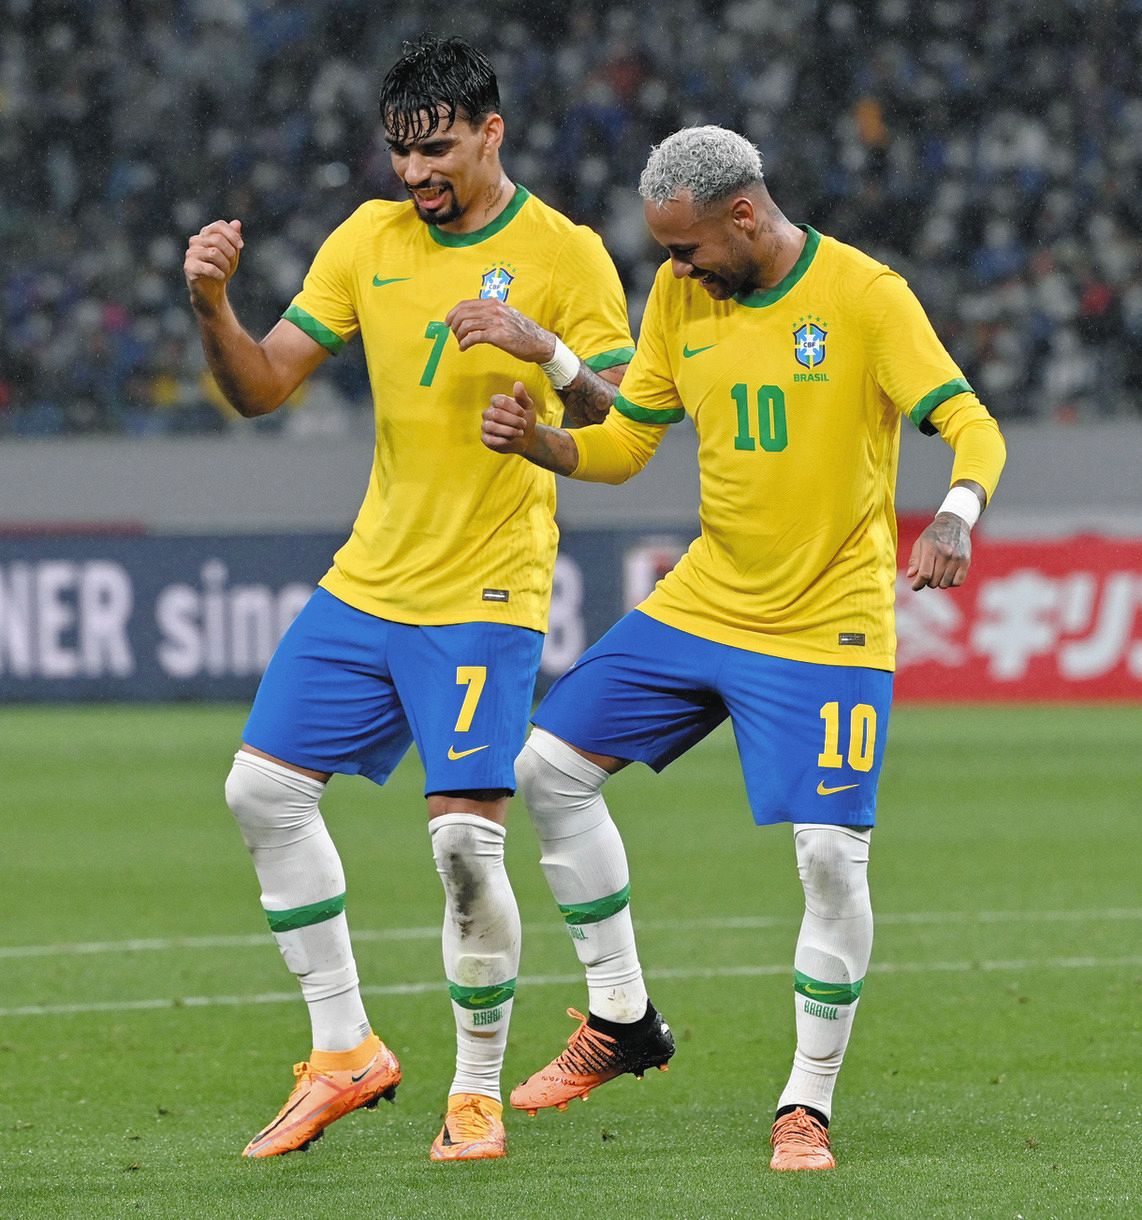 世界最強軍団ブラジル、日本に1-0辛勝 ネイマール、堅守にイラ立つ場面